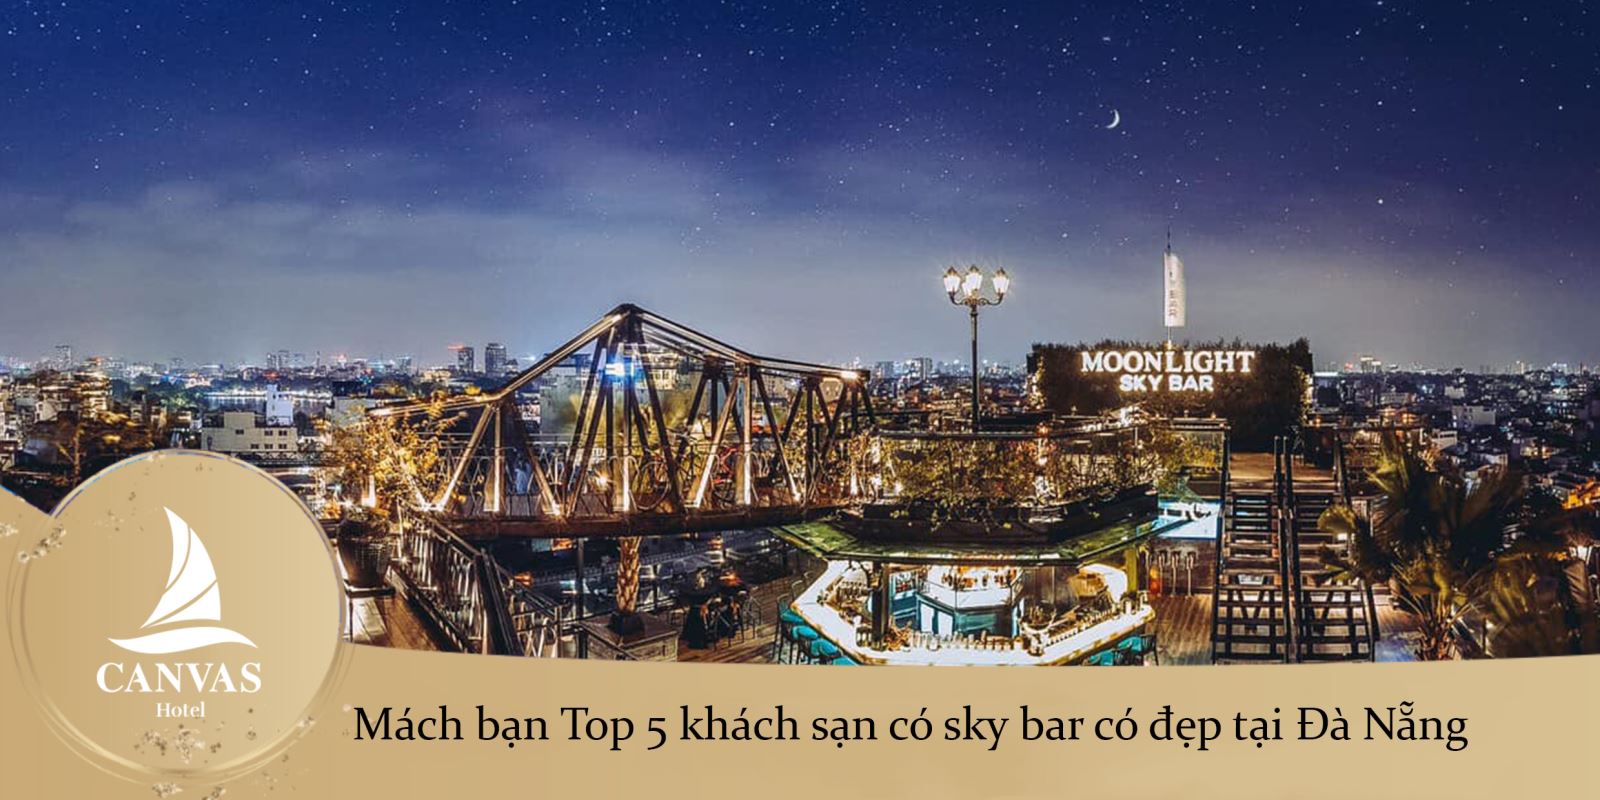 Mách bạn Top 5 khách sạn có sky bar có đẹp tại Đà Nẵng